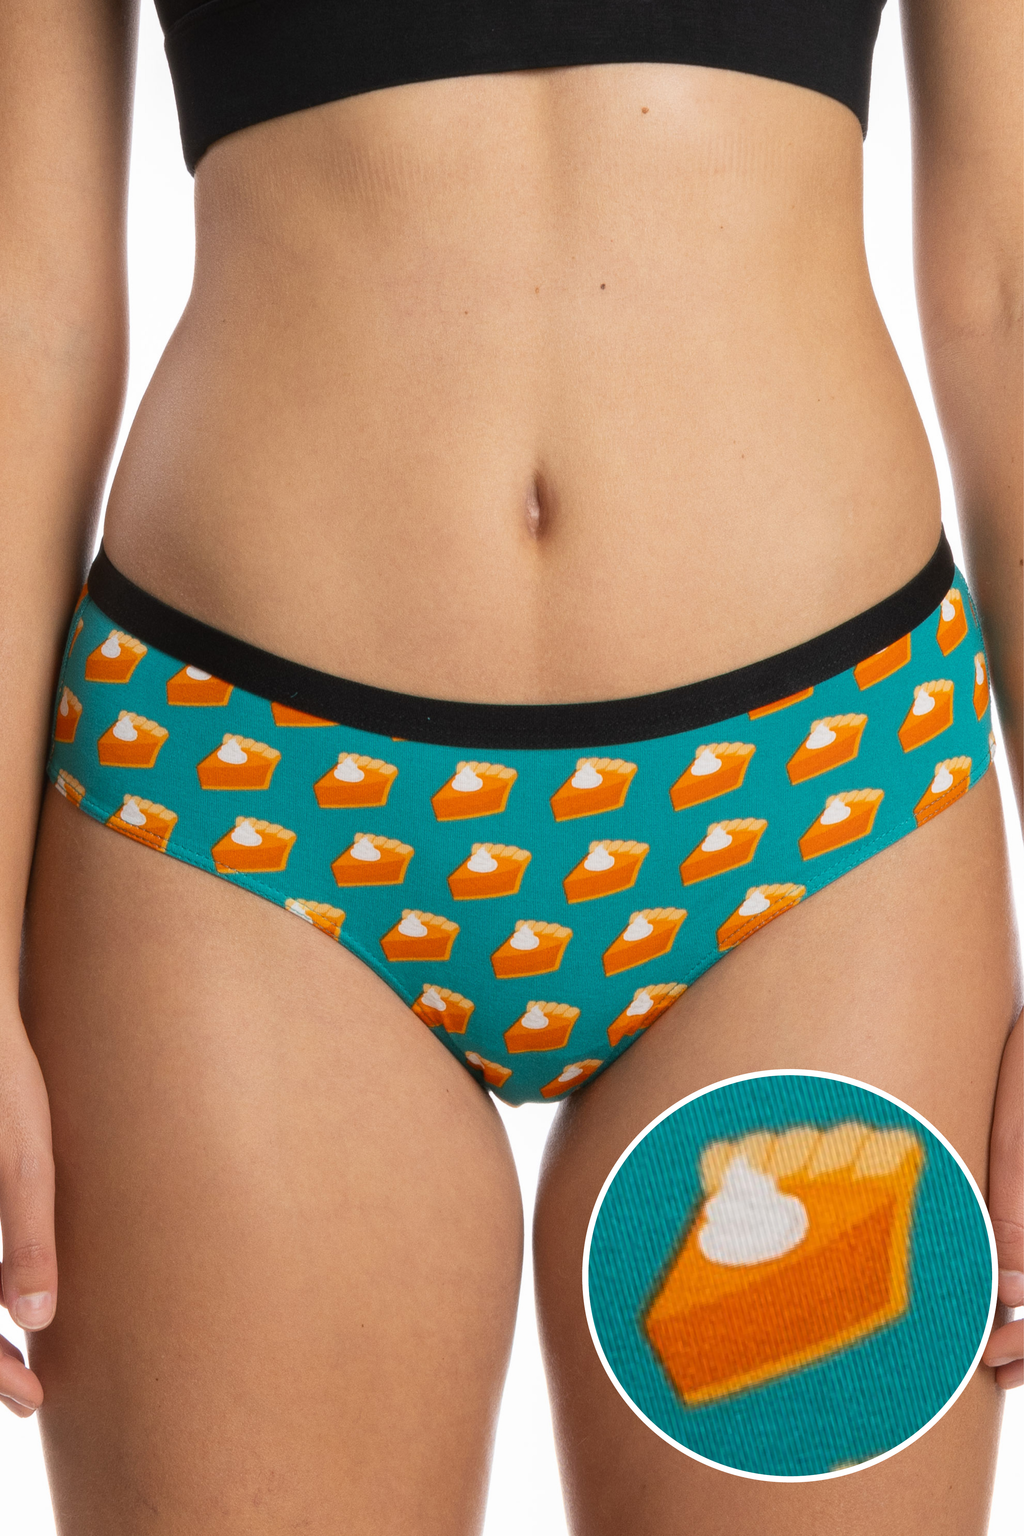 The Last Course | Pumpkin Pie Cheeky Underwear